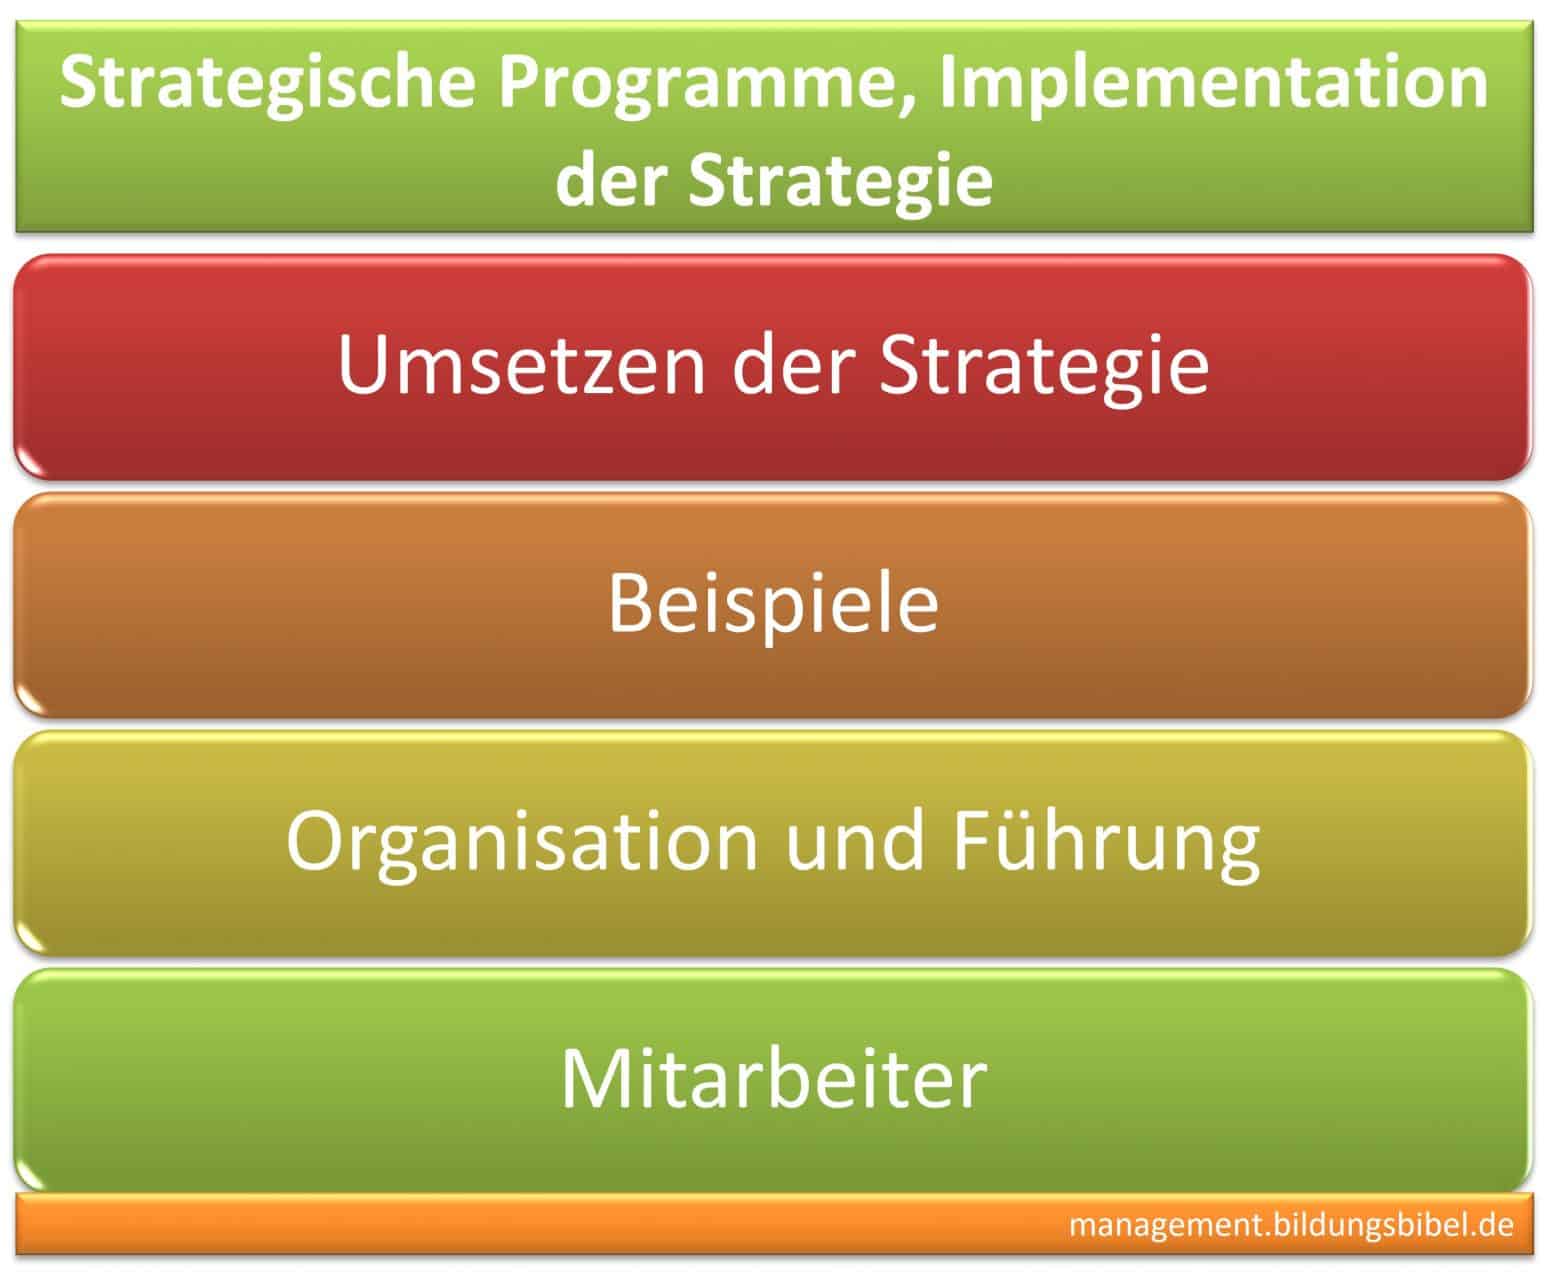 Strategische Programme, Infos zu Führung, Organisation, Mitarbeiter, Beispiel anhand Balance Scorecard, BSC, Implementation der Strategie.